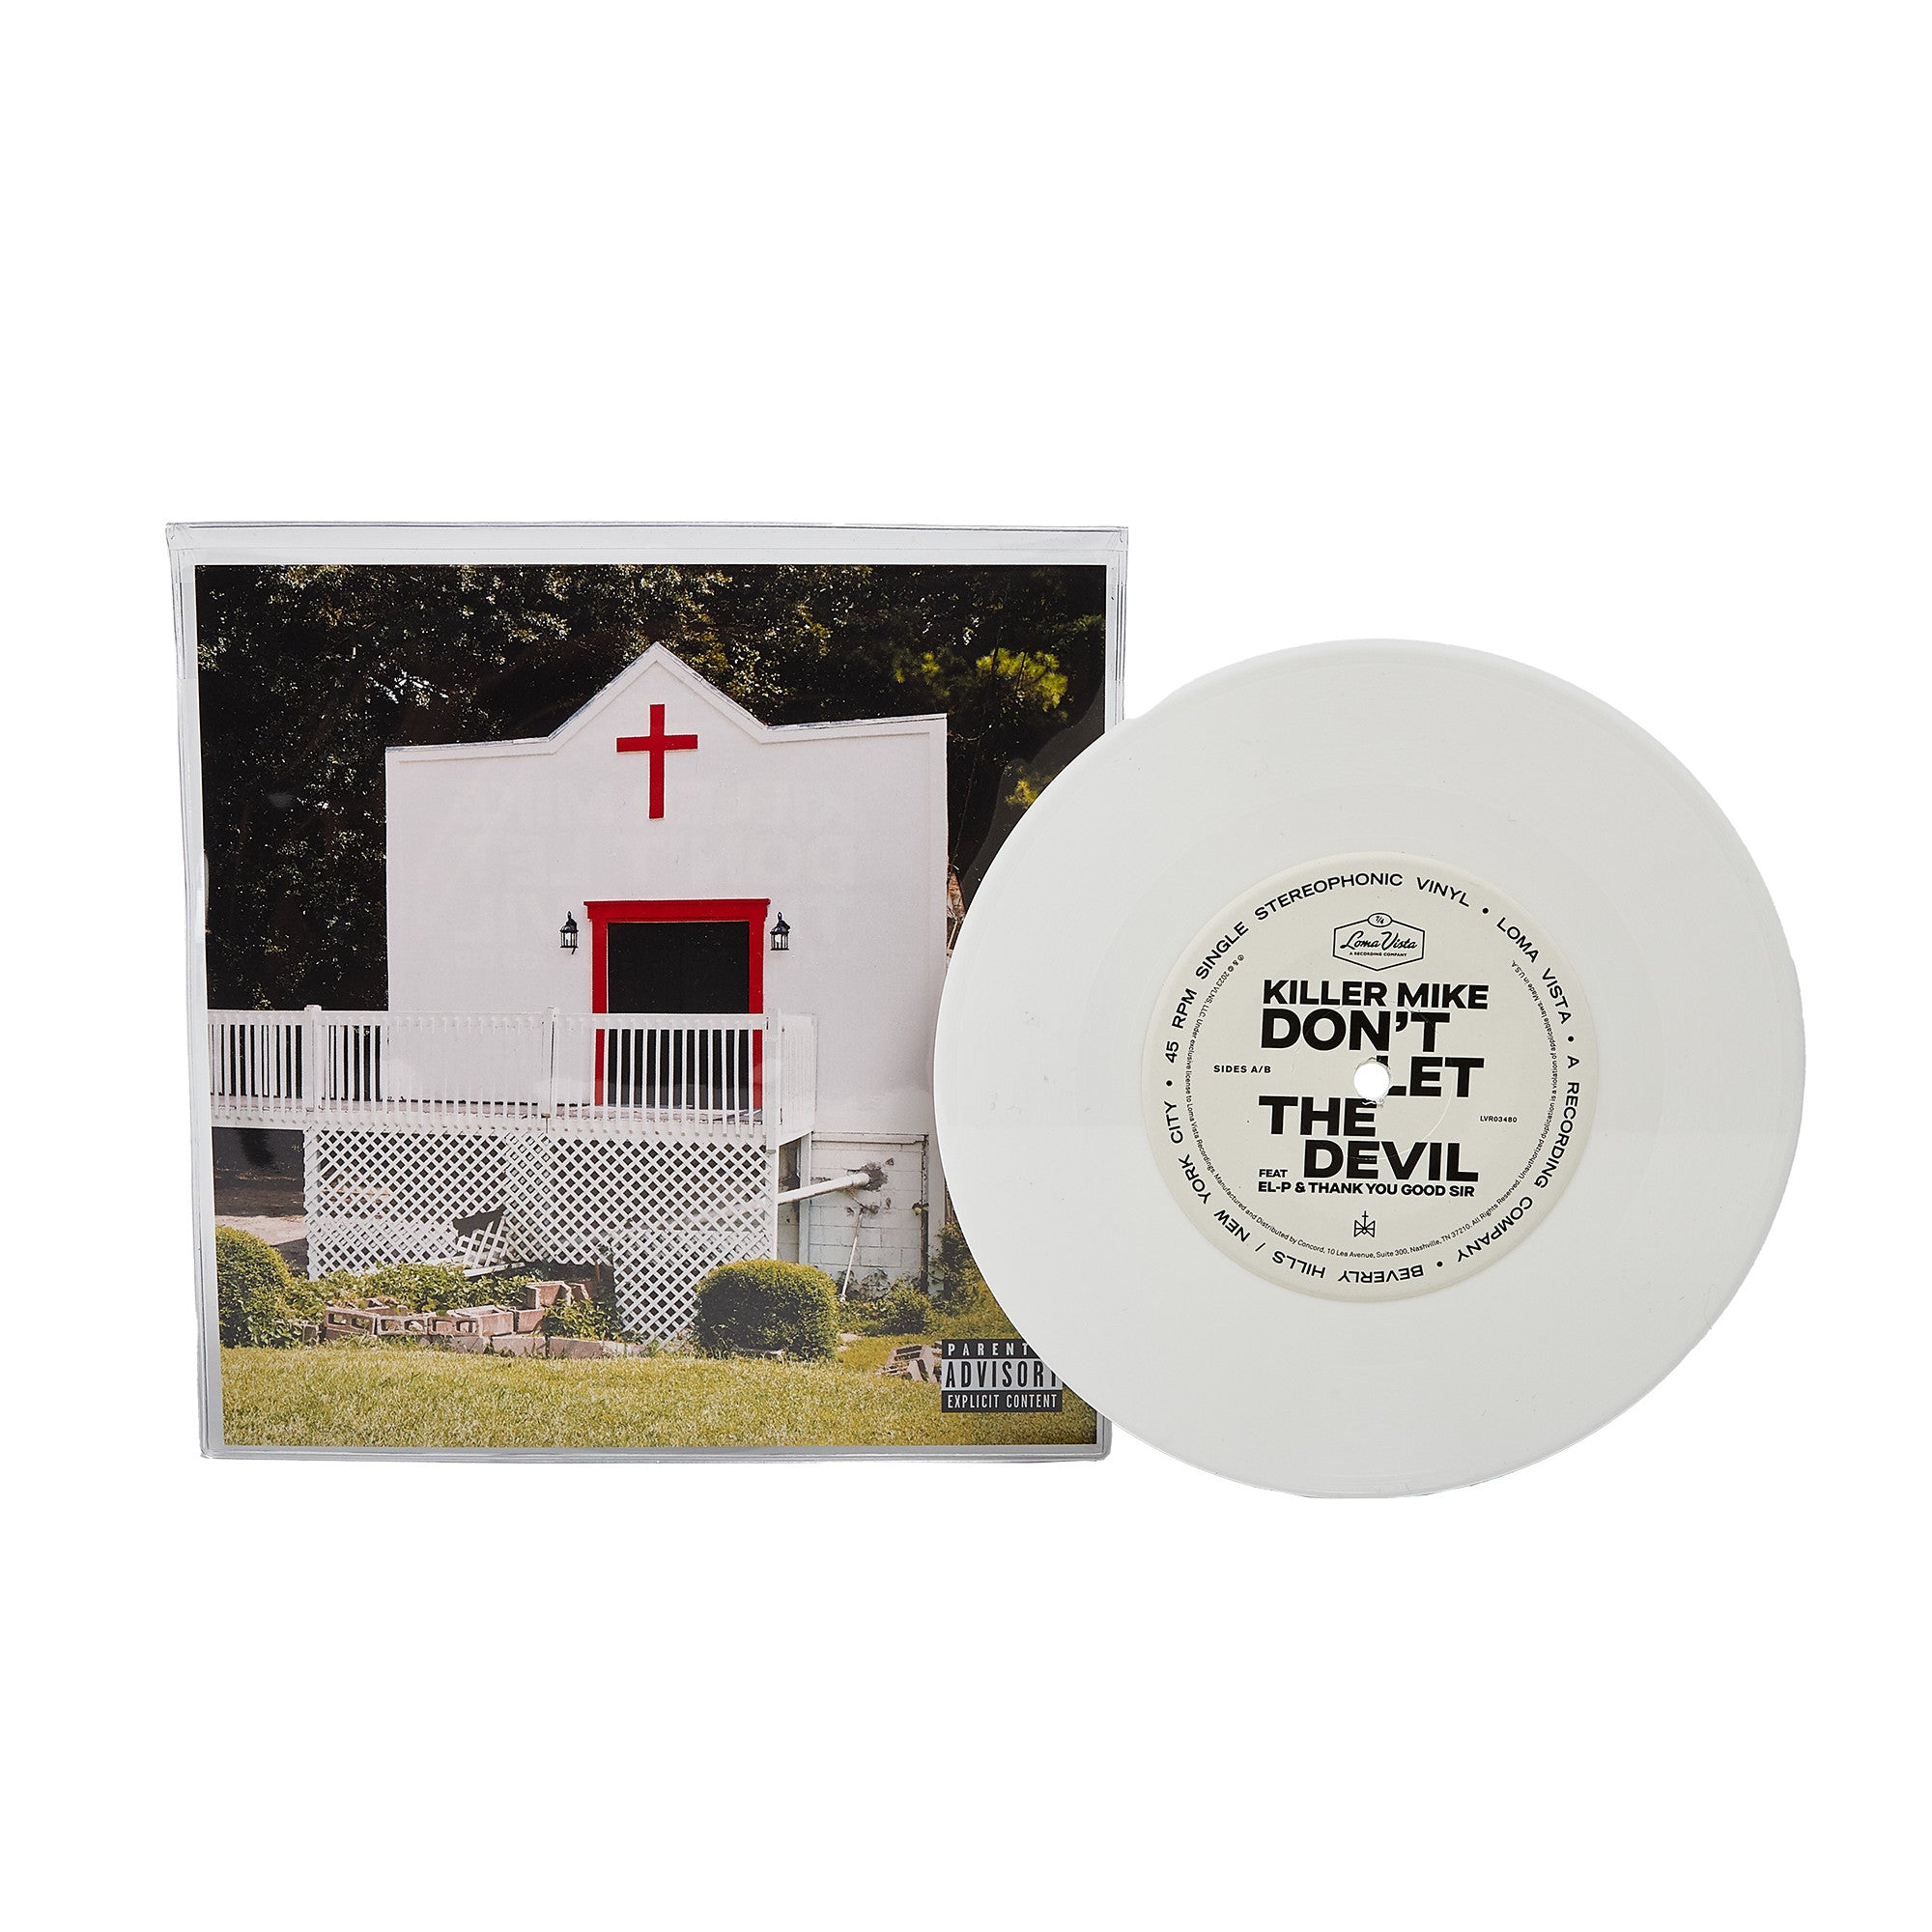 Killer Mike- Don't Let The Devil (White Vinyl) ($3 coupon towards full-length release included)